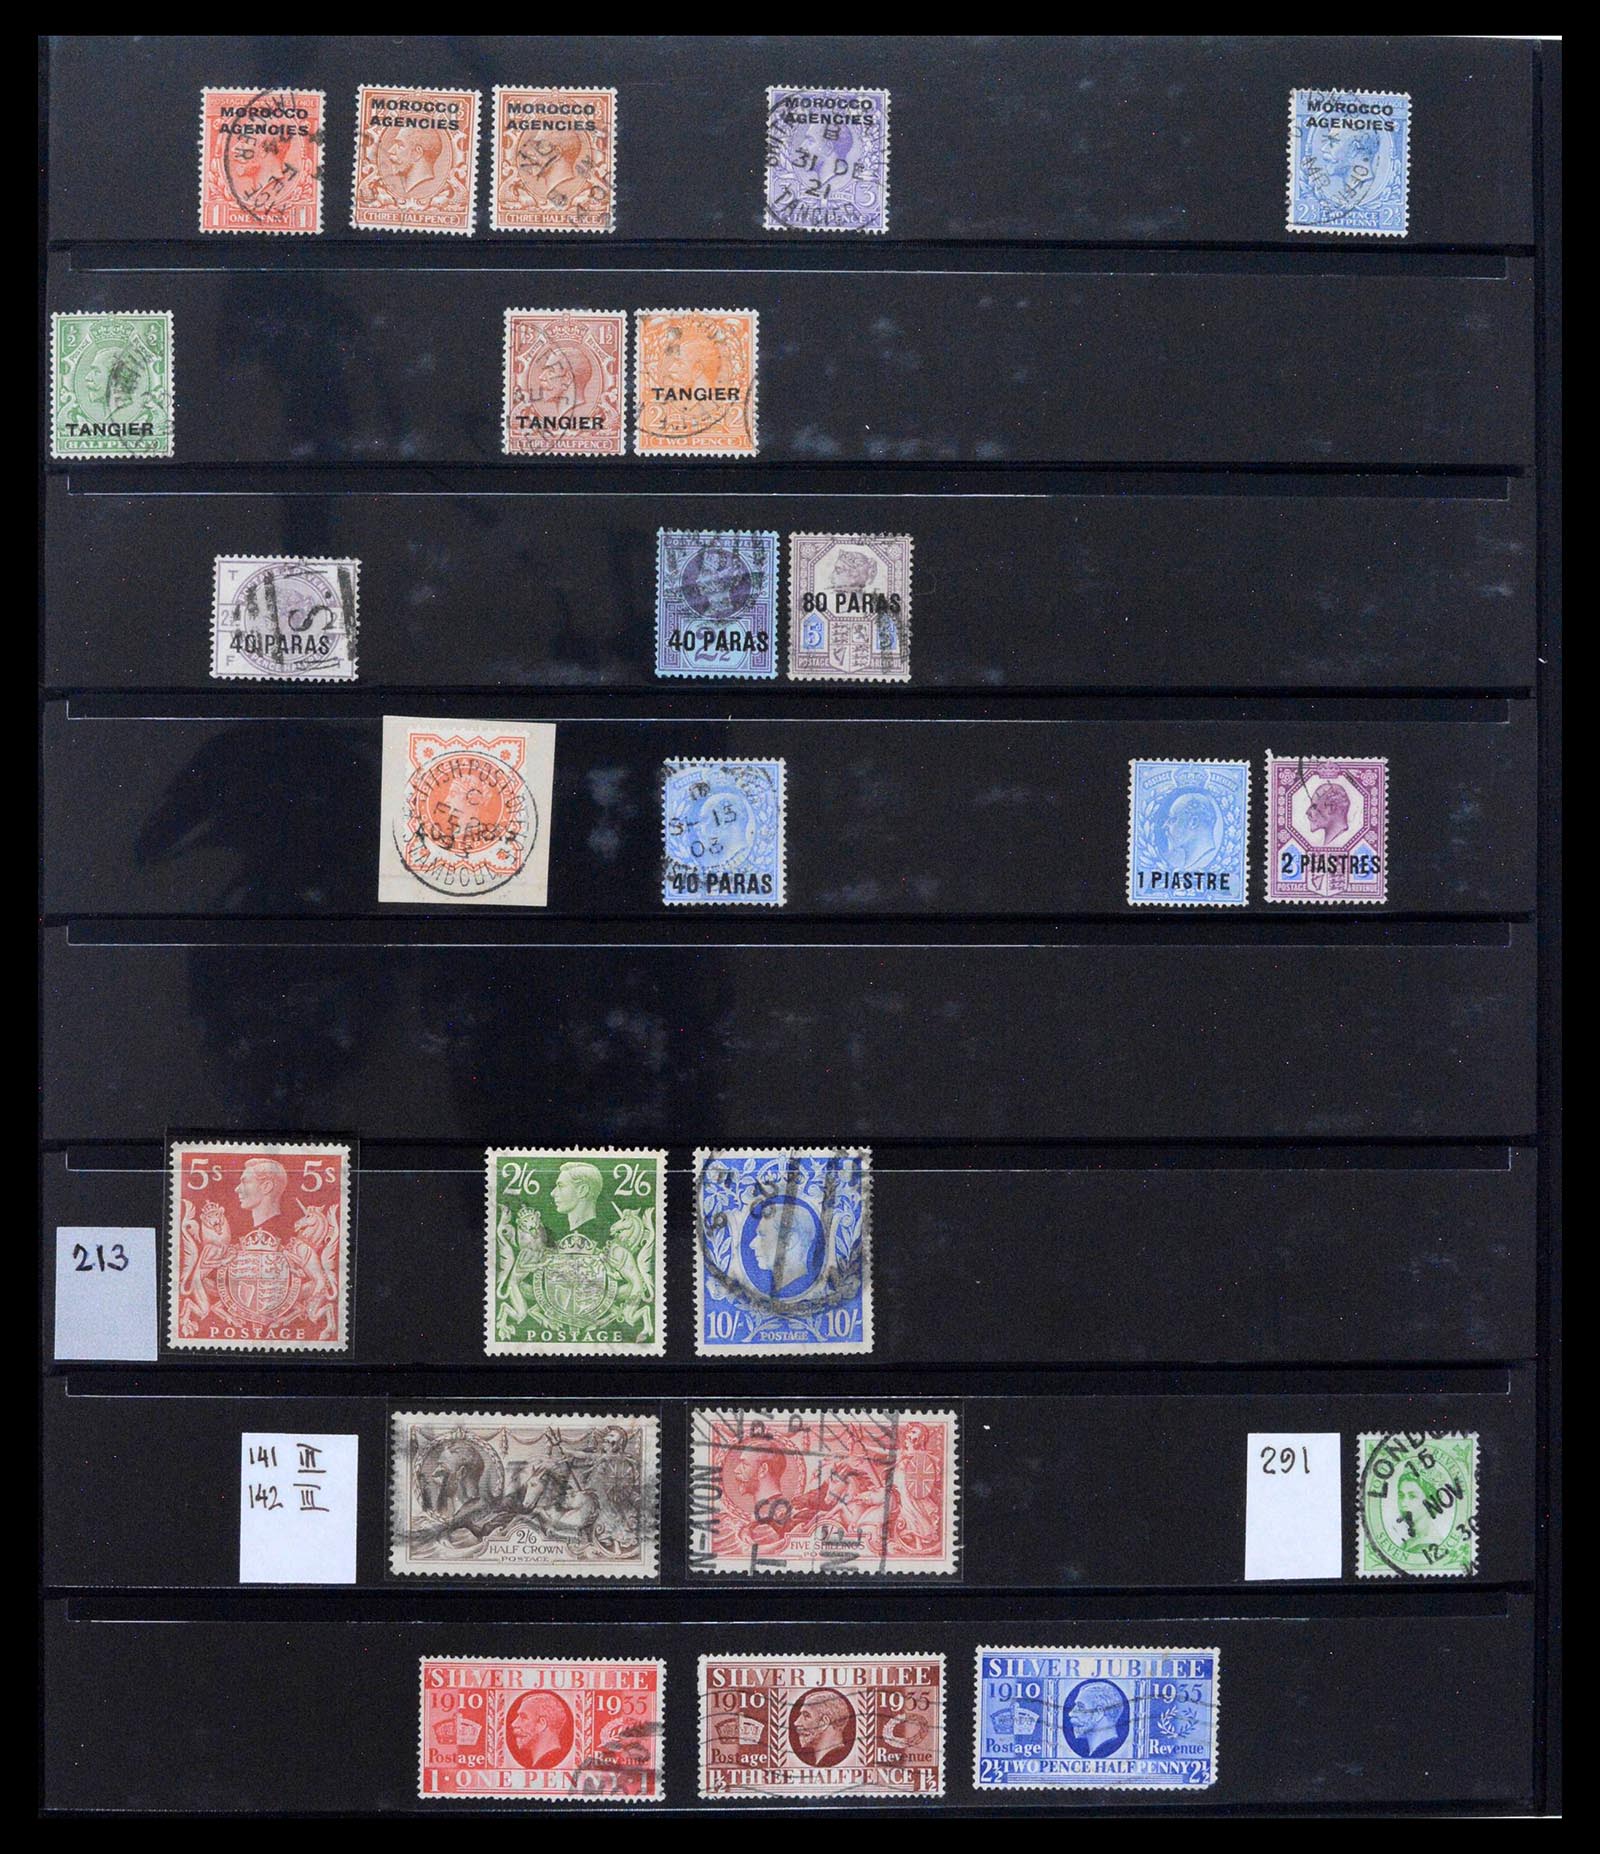 39375 0053 - Postzegelverzameling 39375 Engeland topverzameling 1840-1980.